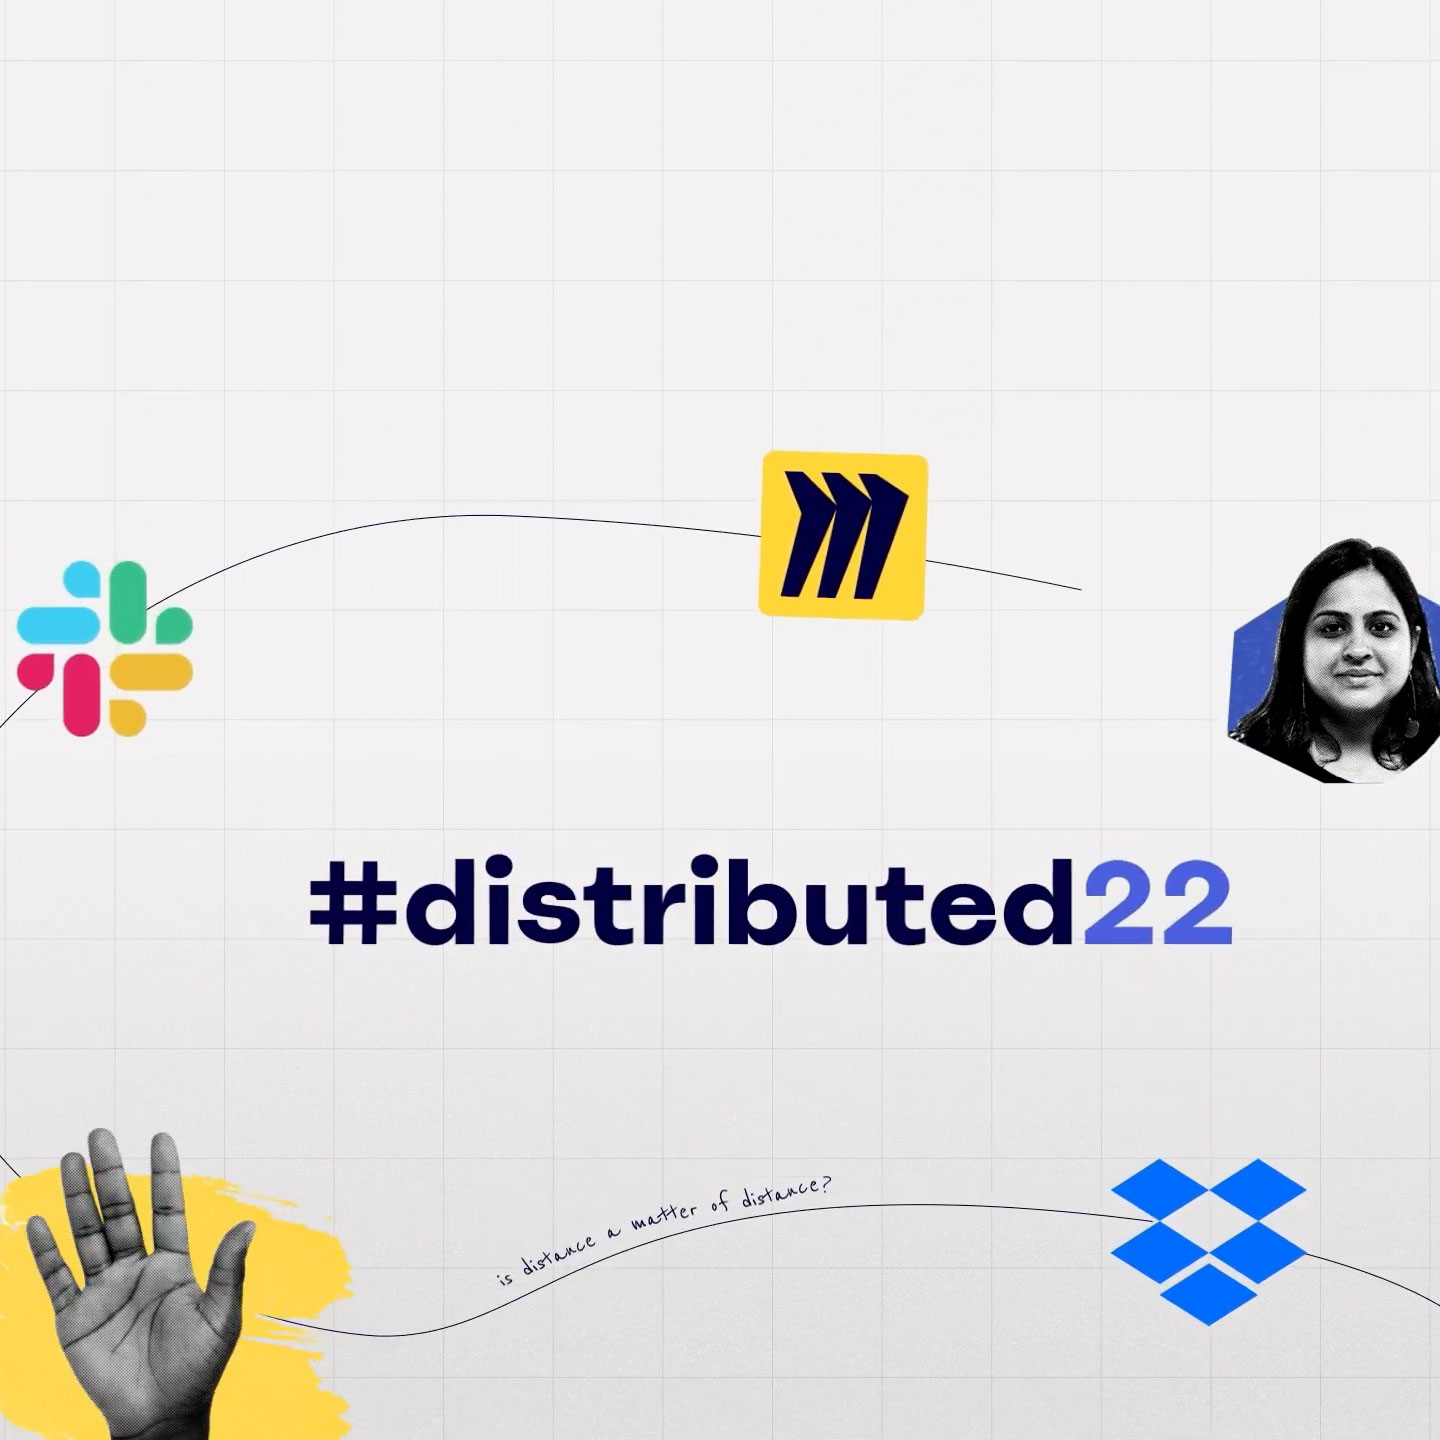 Tarjeta de título del evento #distributed22, con los logotipos de Miro, Slack y Dropbox